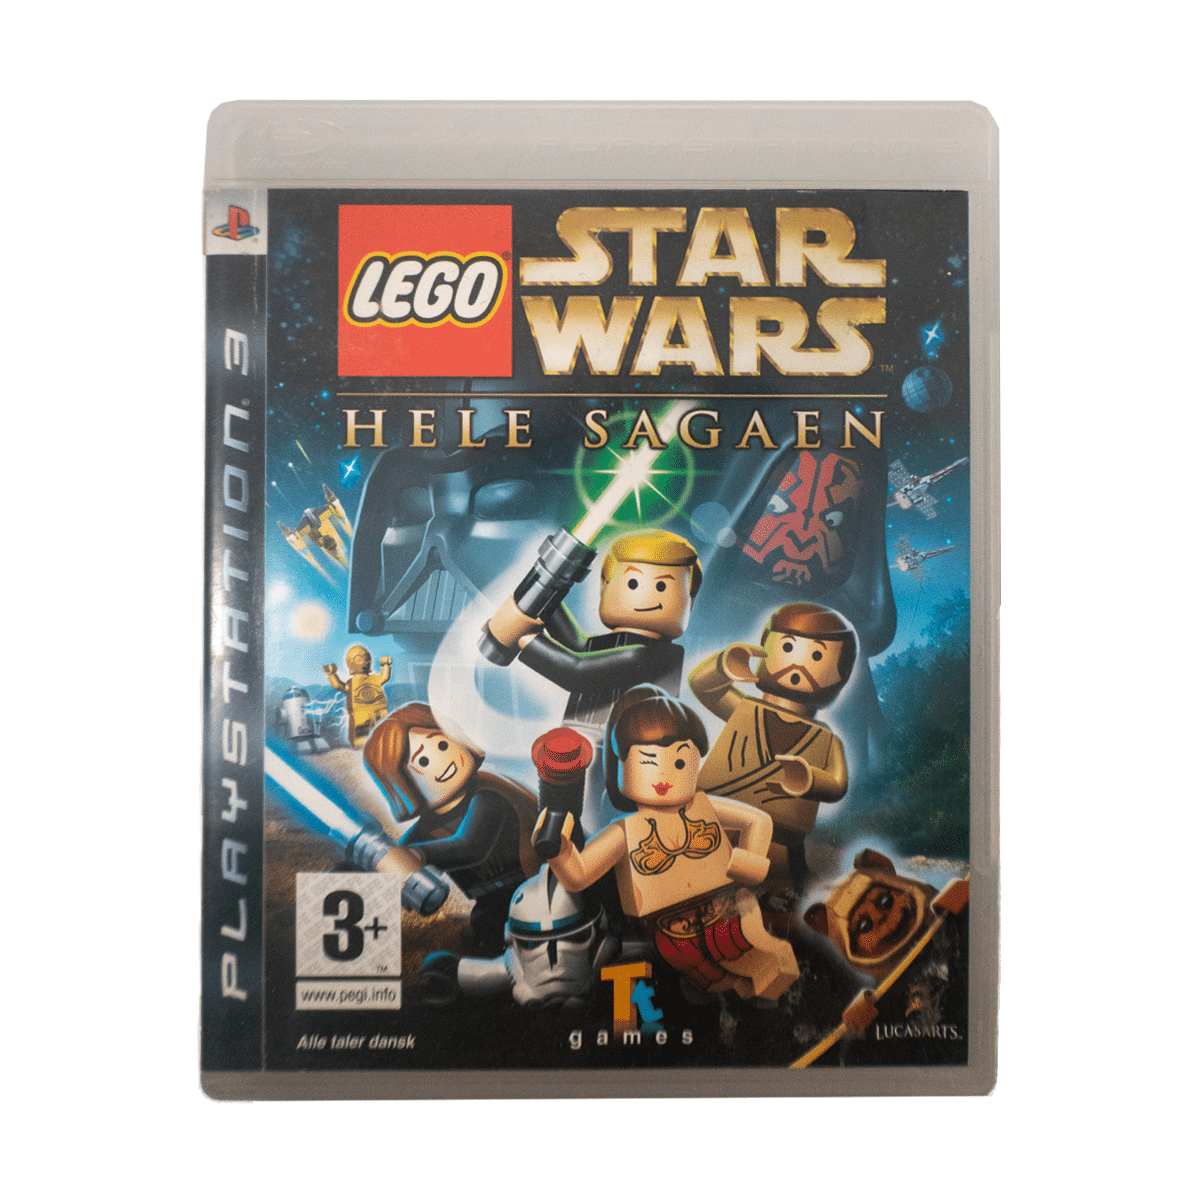 Hjelm beundring hoste LEGO Star Wars Complete Saga - PlayStation 3 Spil - Retro Spilbutik